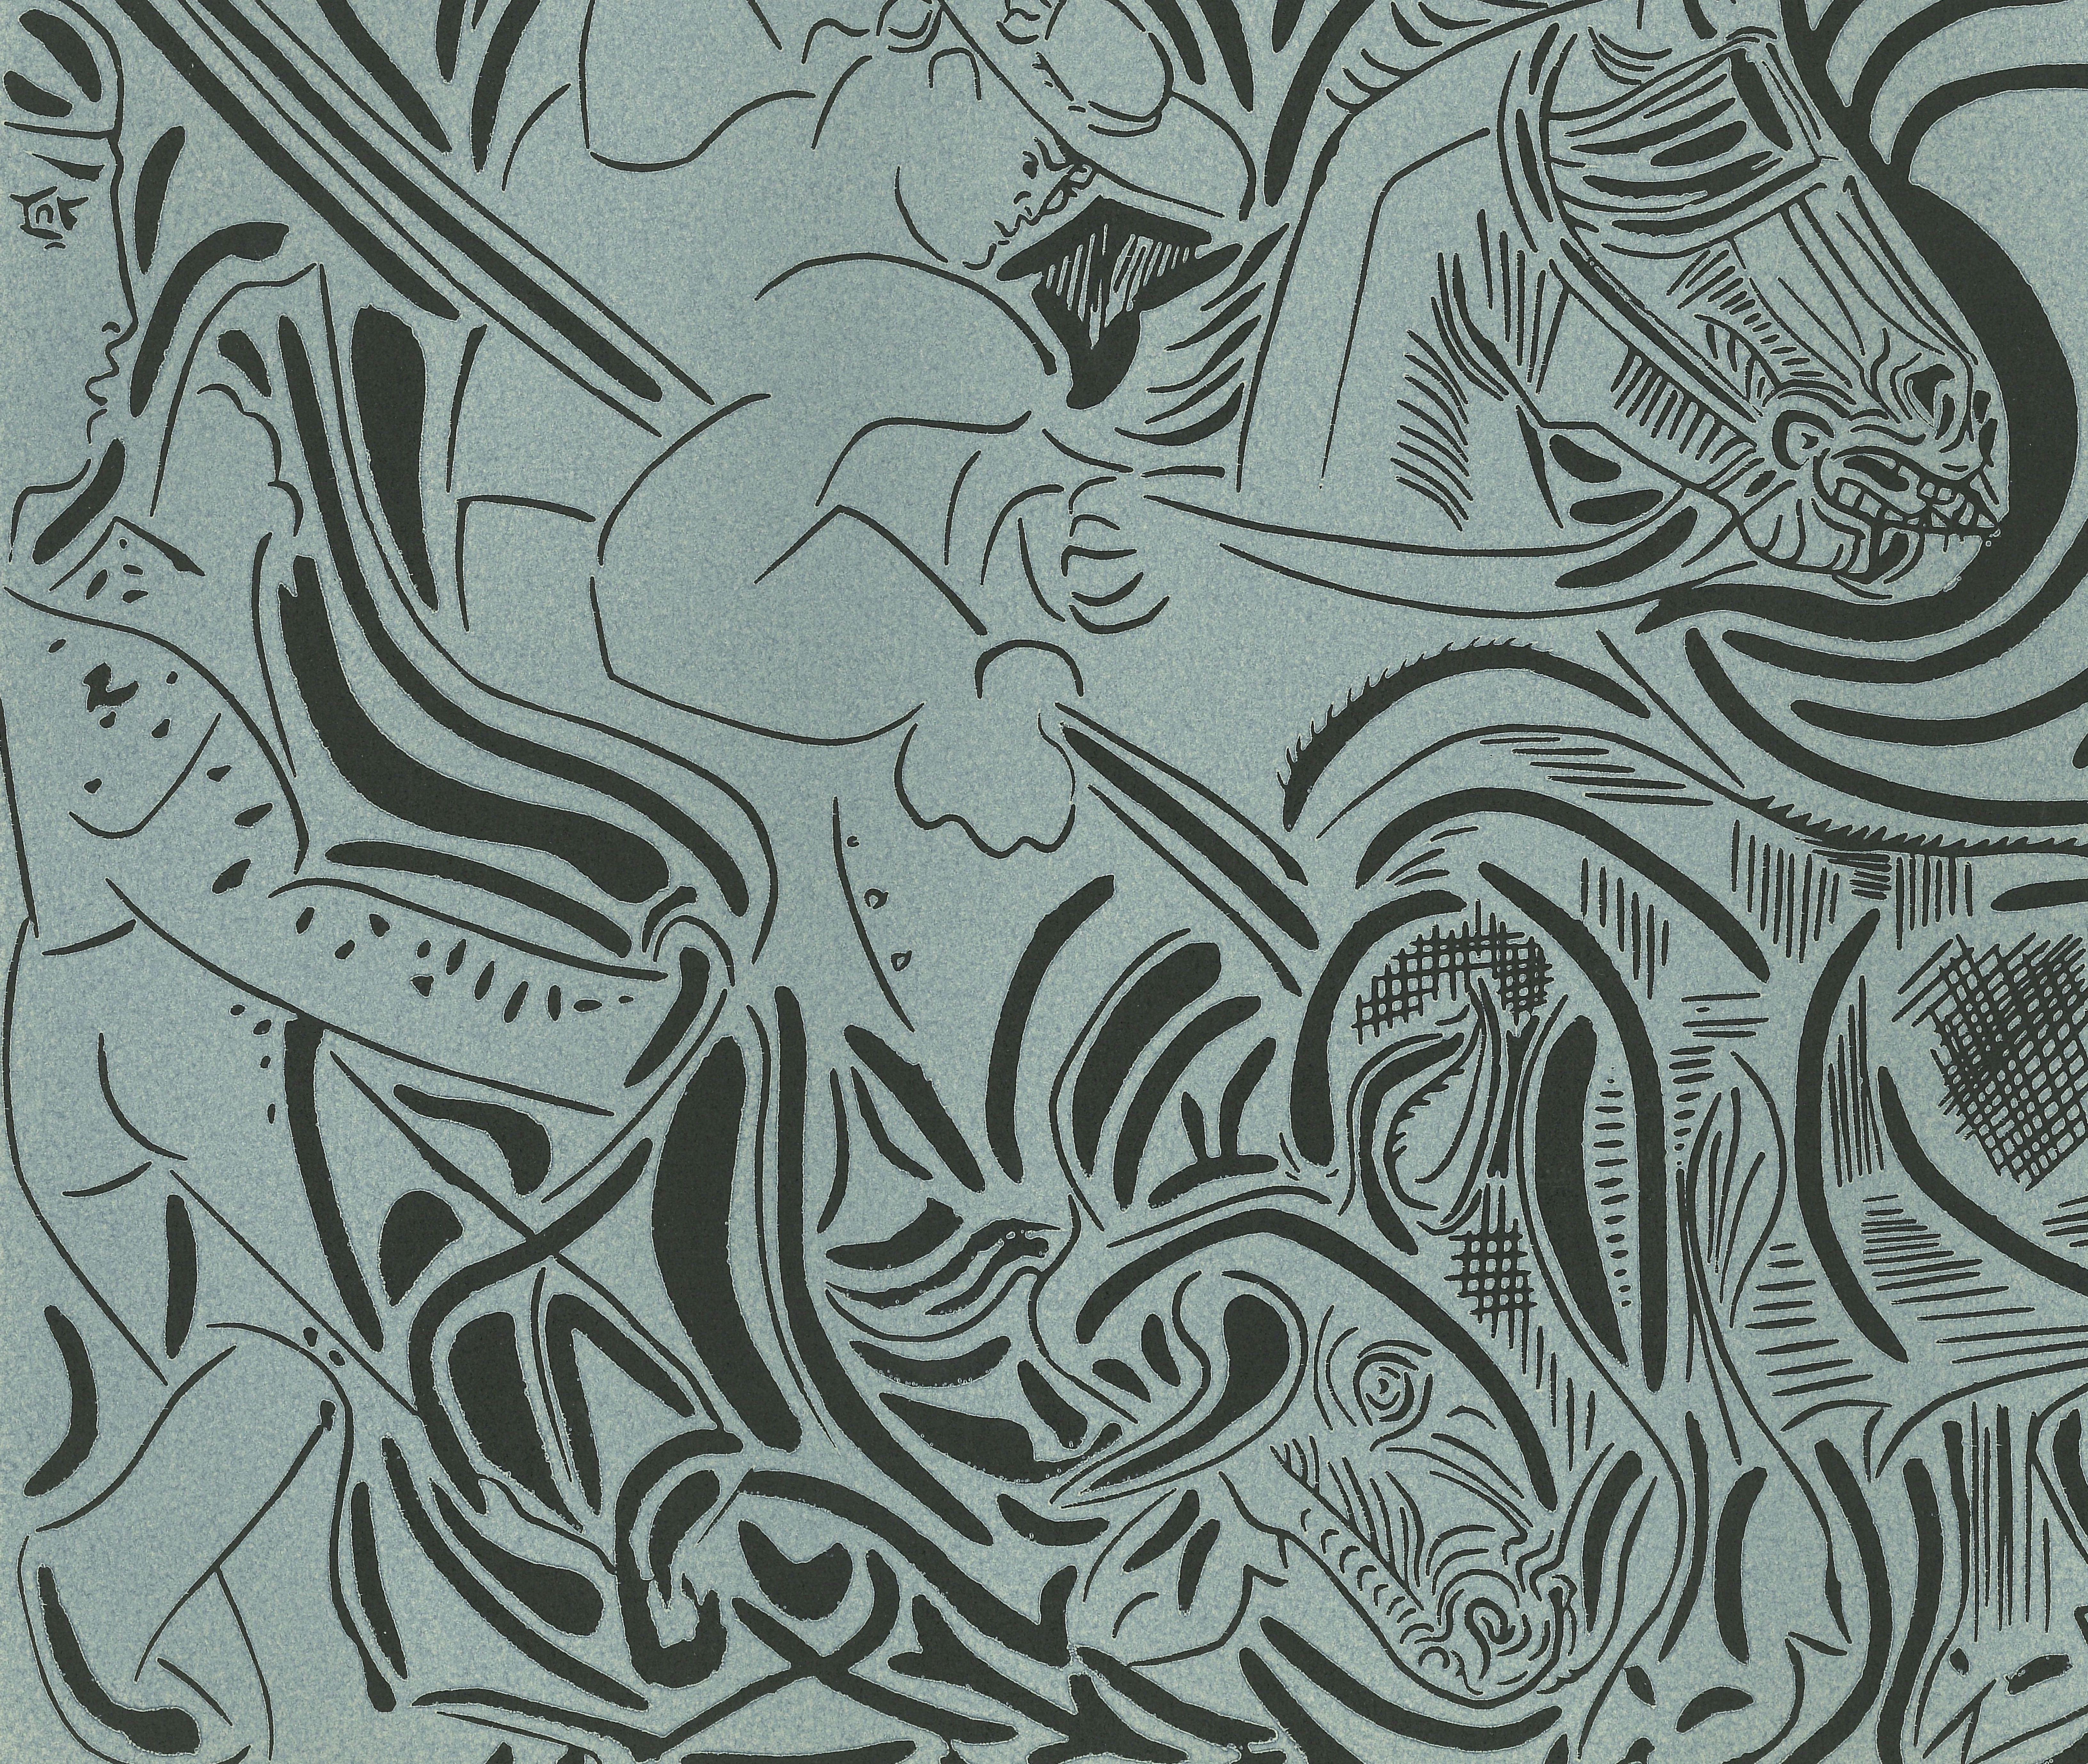 La Pique - Original Linocut After Pablo Picasso - 1962 - Print by (after) Pablo Picasso